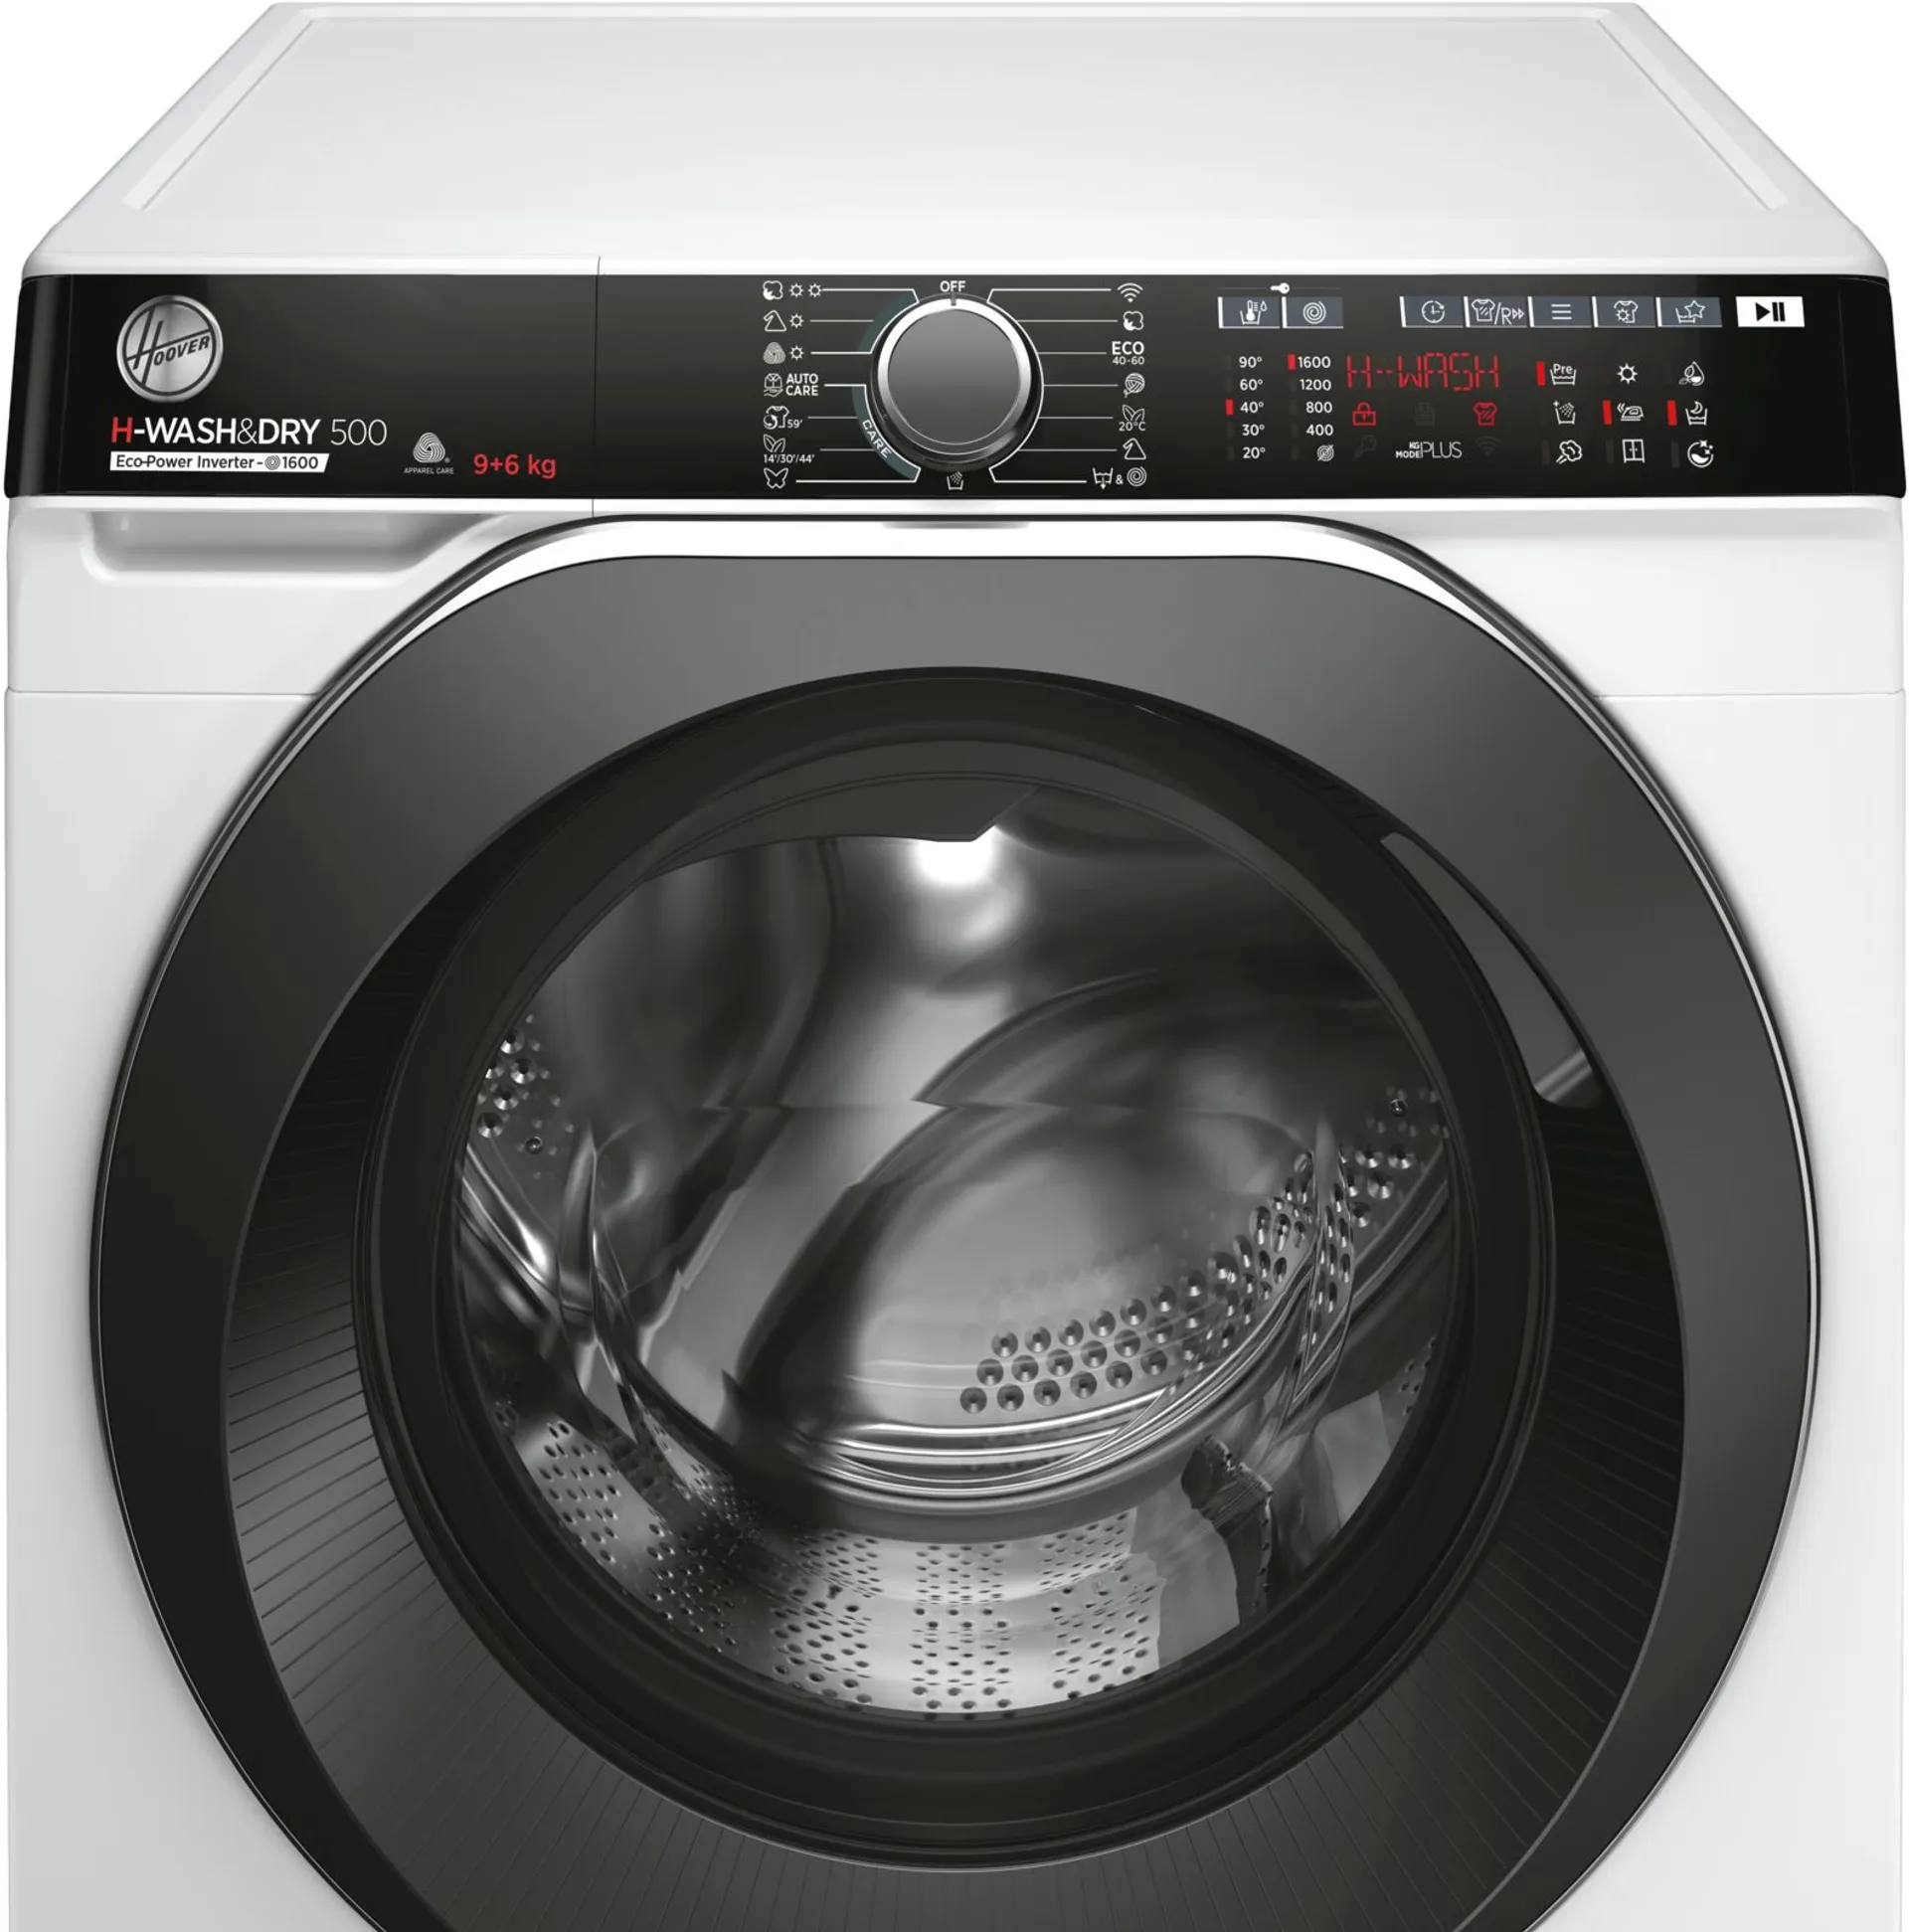 Hoover kuivaava pyykinpesukone 9/6kg H-Wash&Dry 500 Pro valkoinen - 3